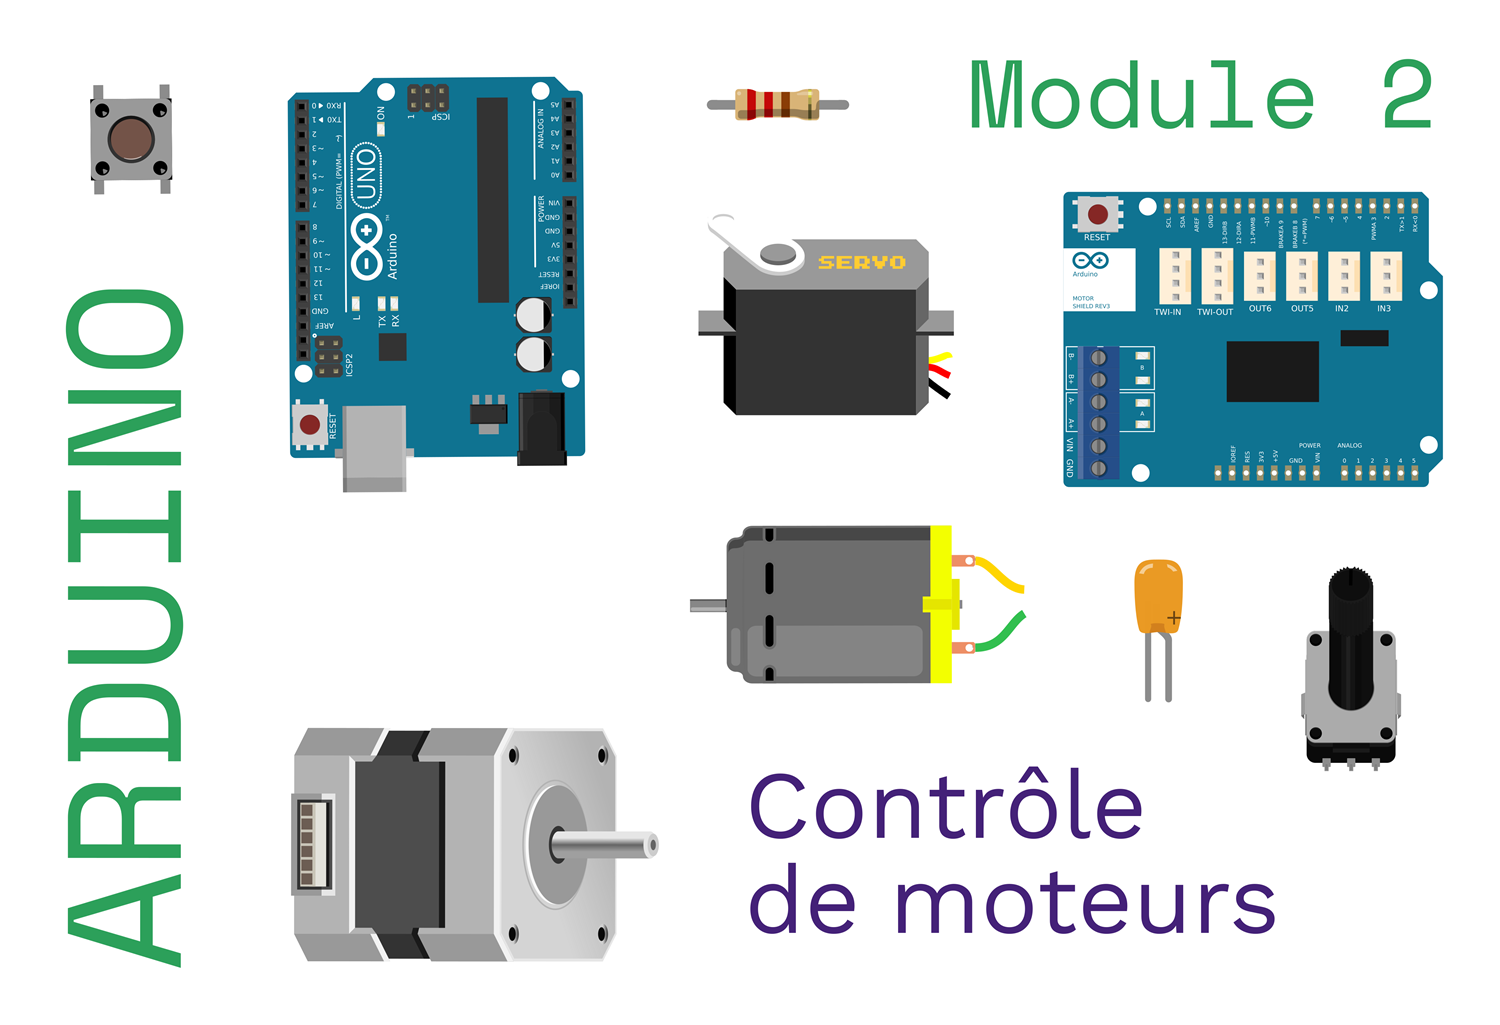 Introduction à l'électronique sensée - Arduino (Module 2 - moteurs)